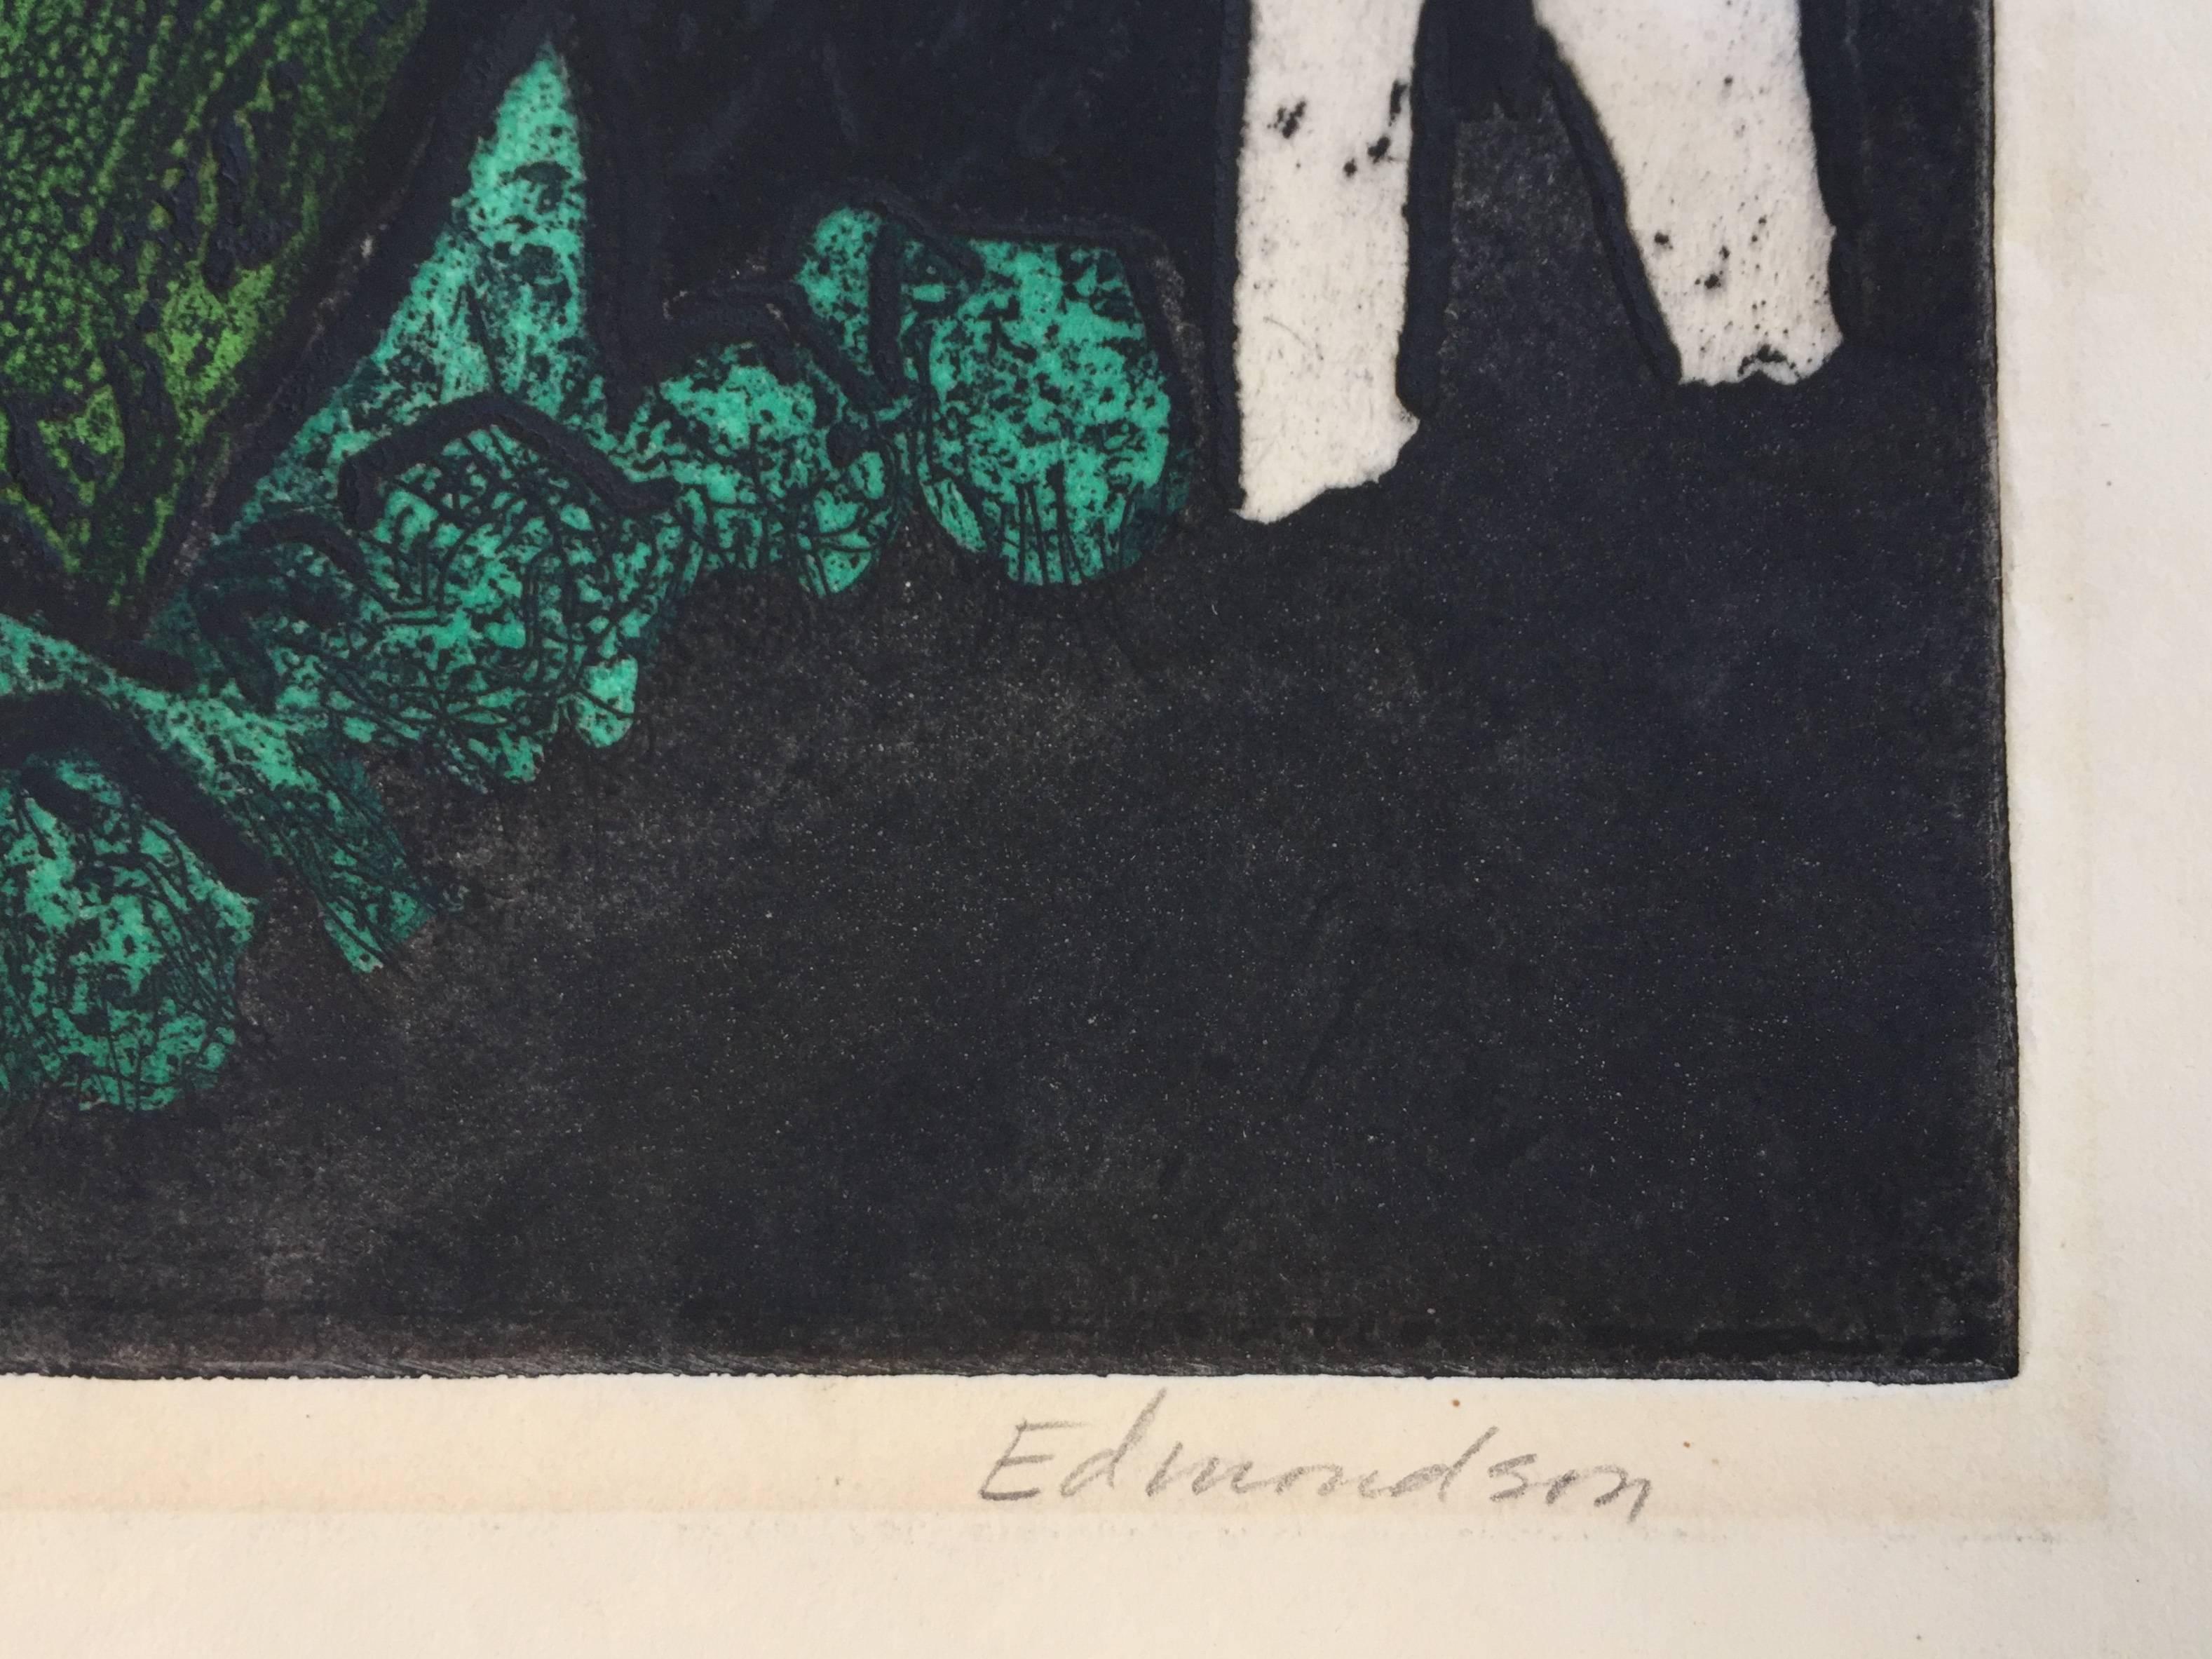 Garden of Eden - Abstract Expressionist Print by Leonard Edmondson